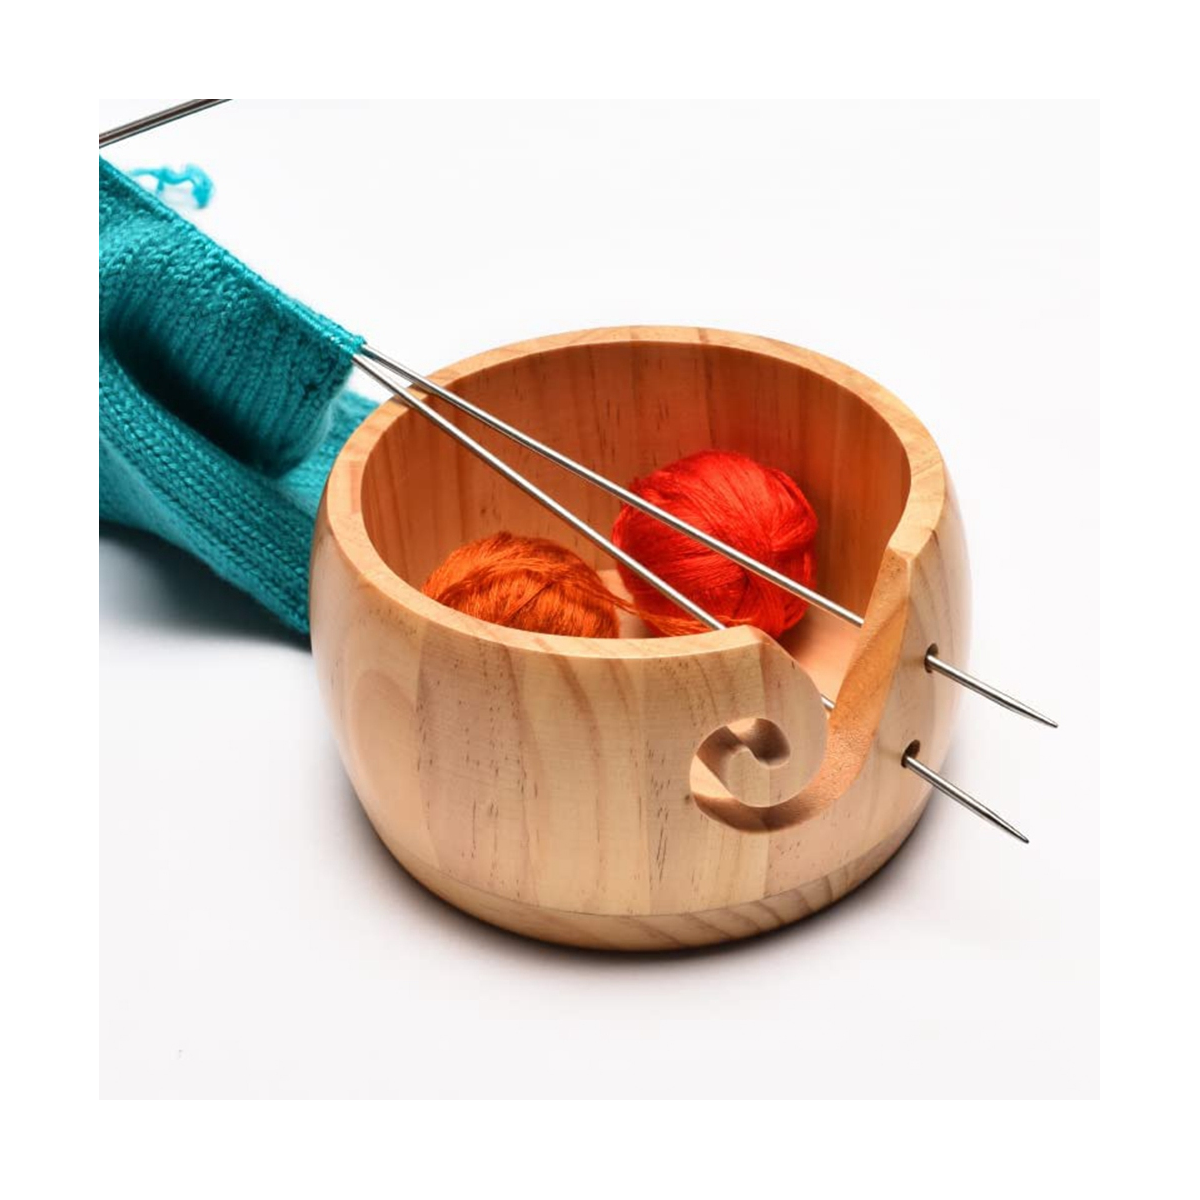 Wooden Yarn Bowl,Yarn Bowls with Lid for Knitting Crochet Yarn Ball Holder  Handmade Yarn Storage Bowl,Light Wood